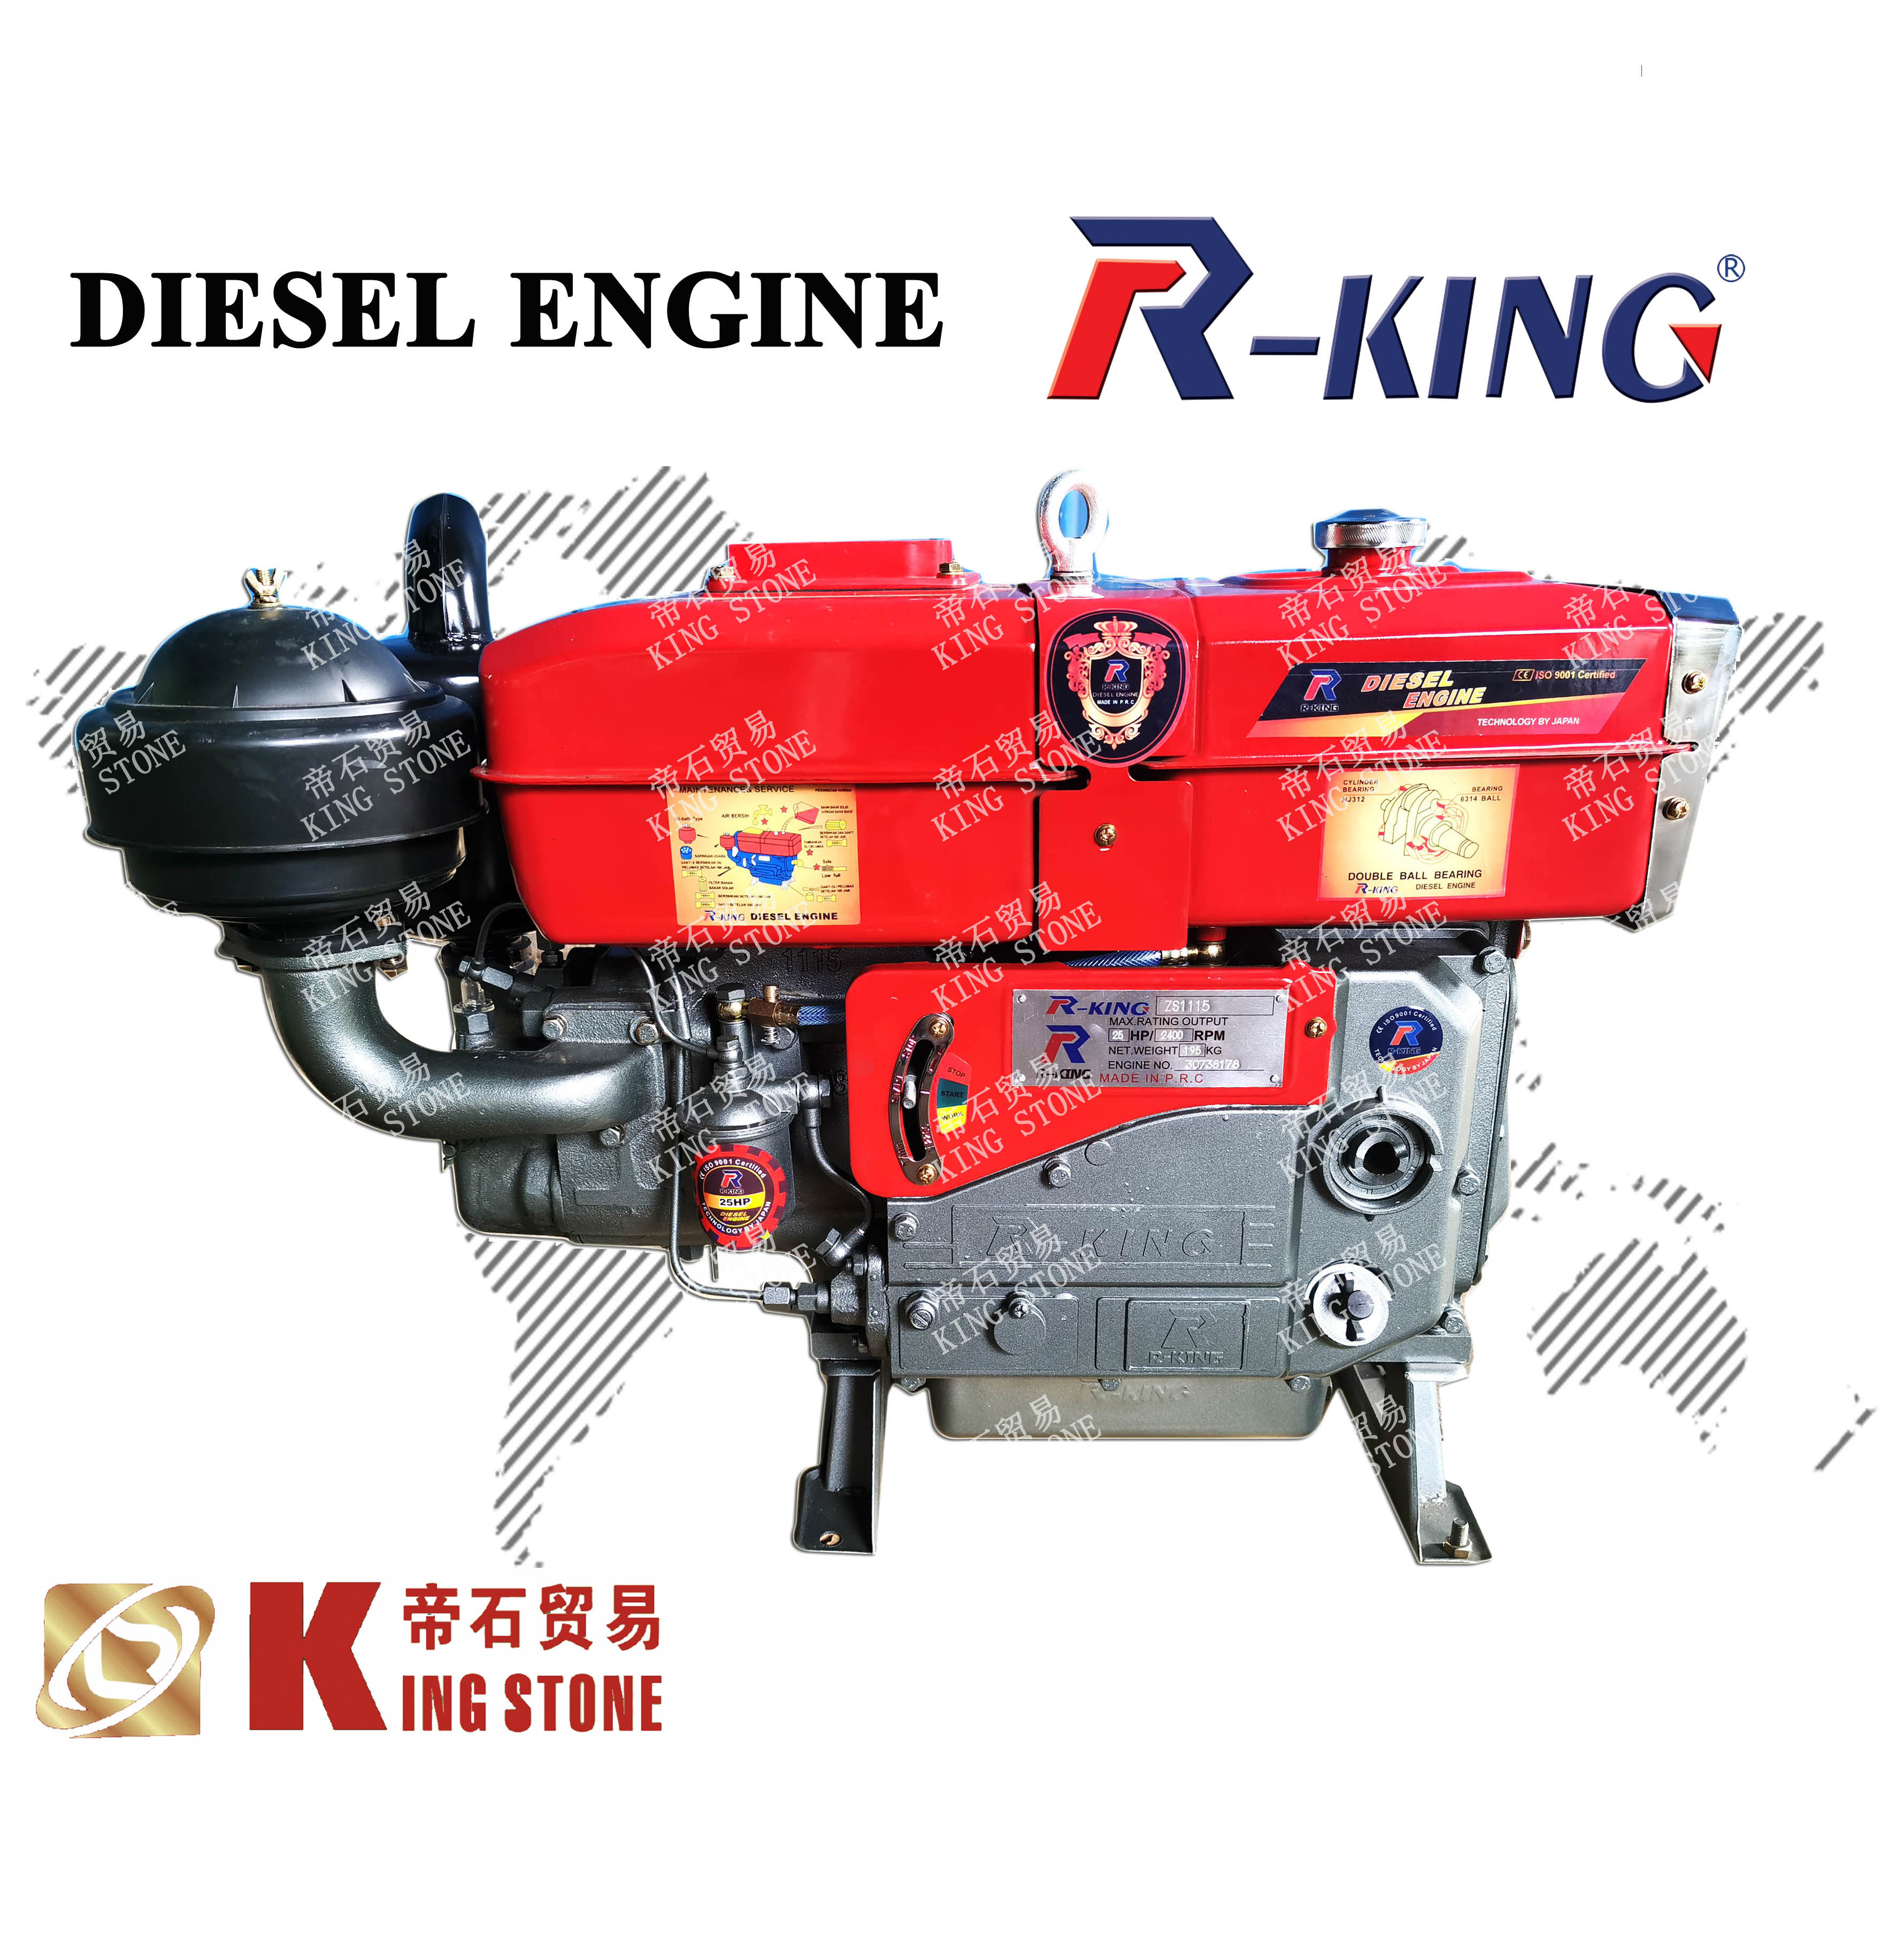 R-KING DIESEL ENGINE CHANGCHAI S1115